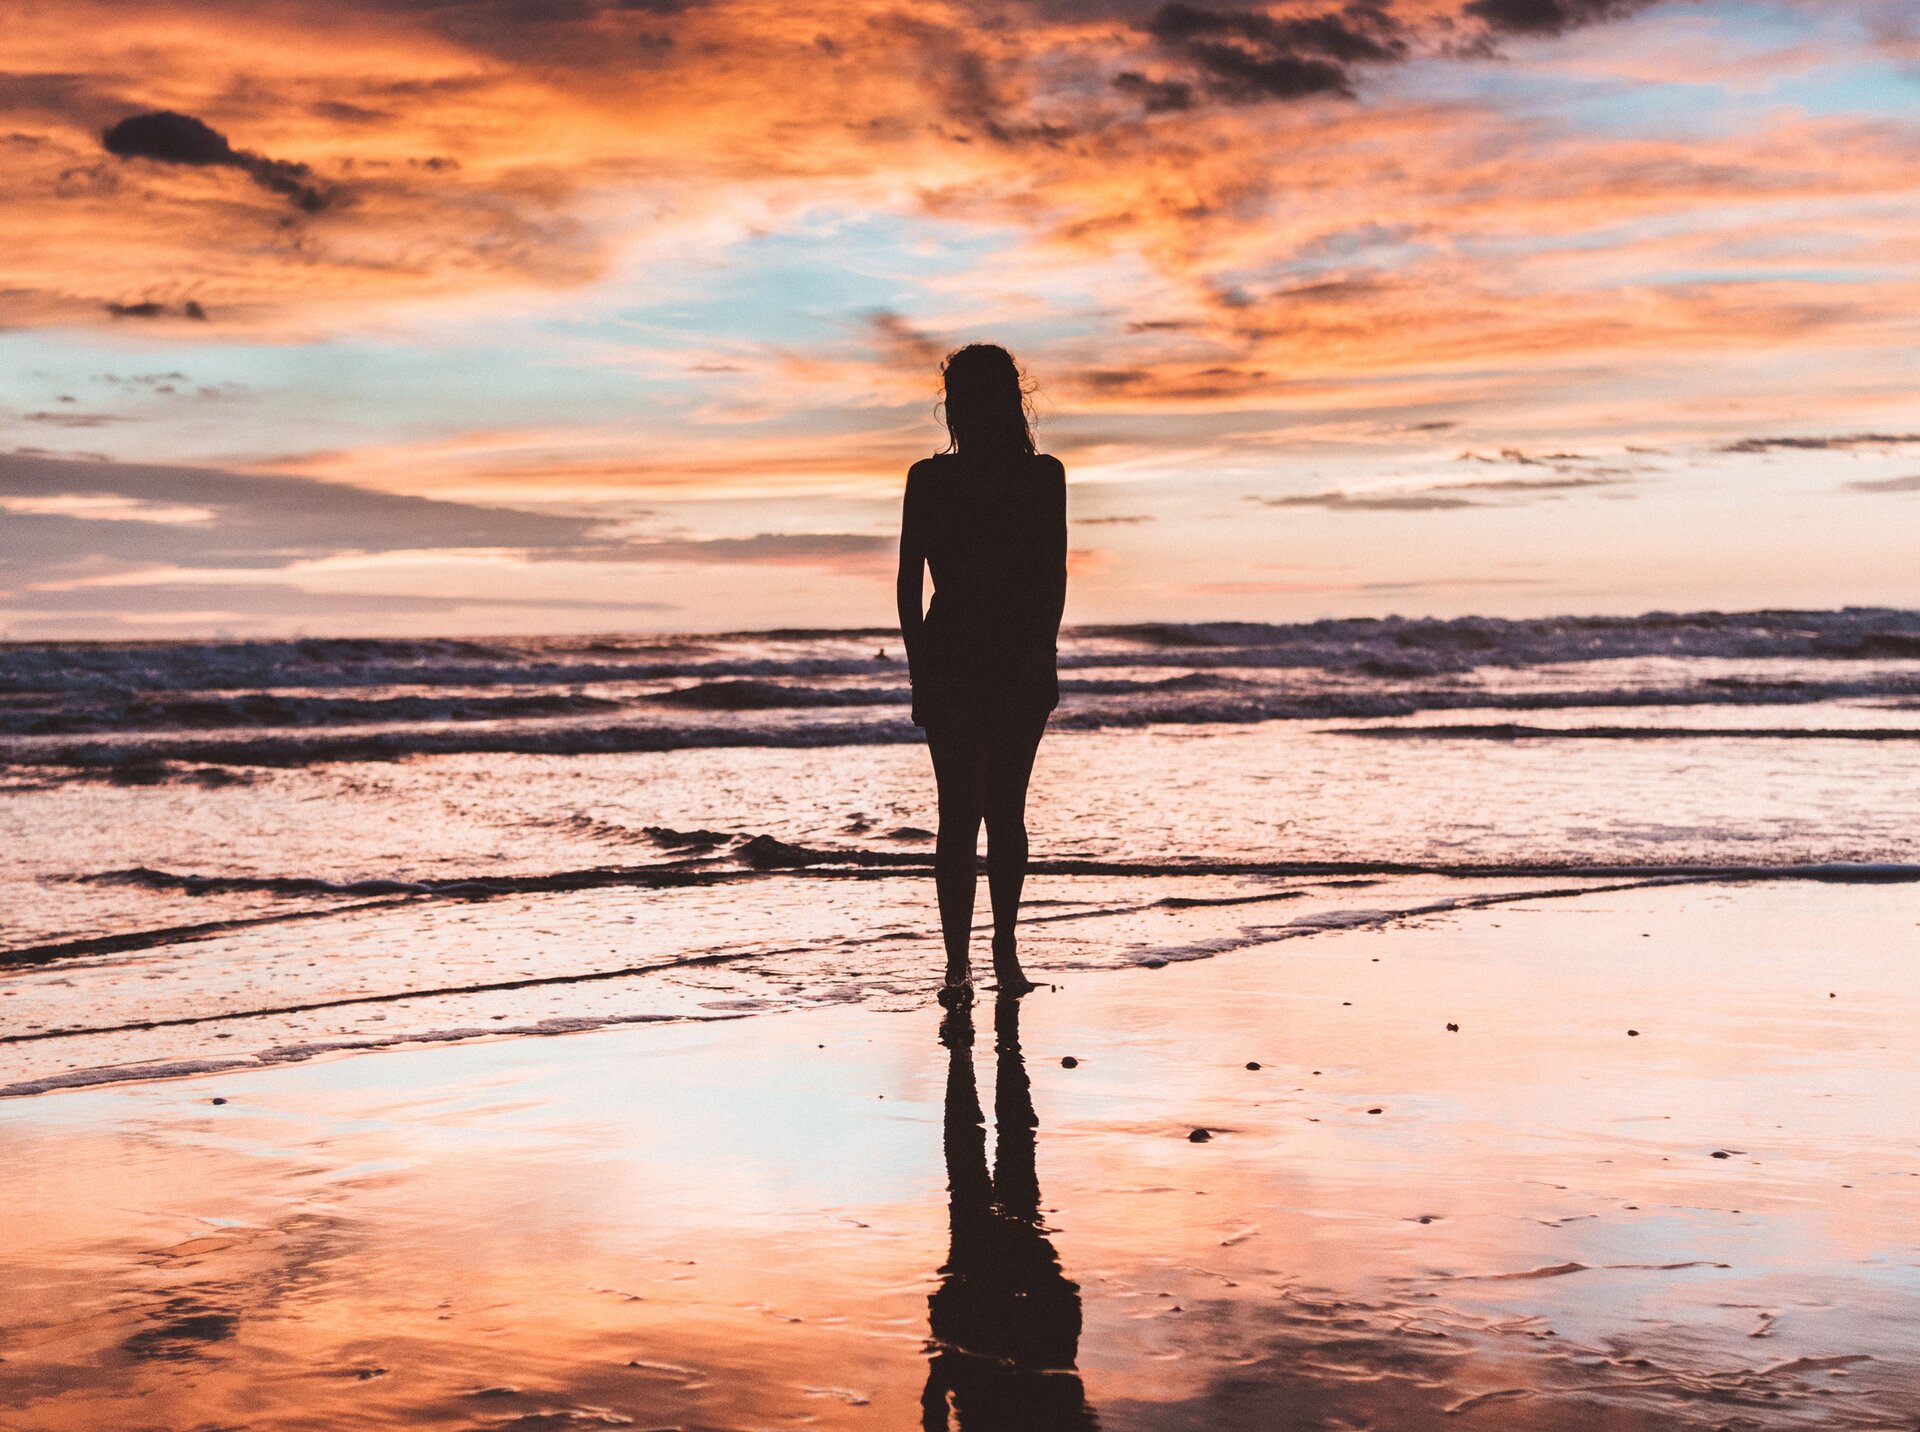 Rys. a. Zdjęcie przedstawia sylwetkę dziewczyny stojącej na piaszczystej plaży tuż przy brzegu morza. Niewielkie fale morskie obmywają jej bose stopy. 